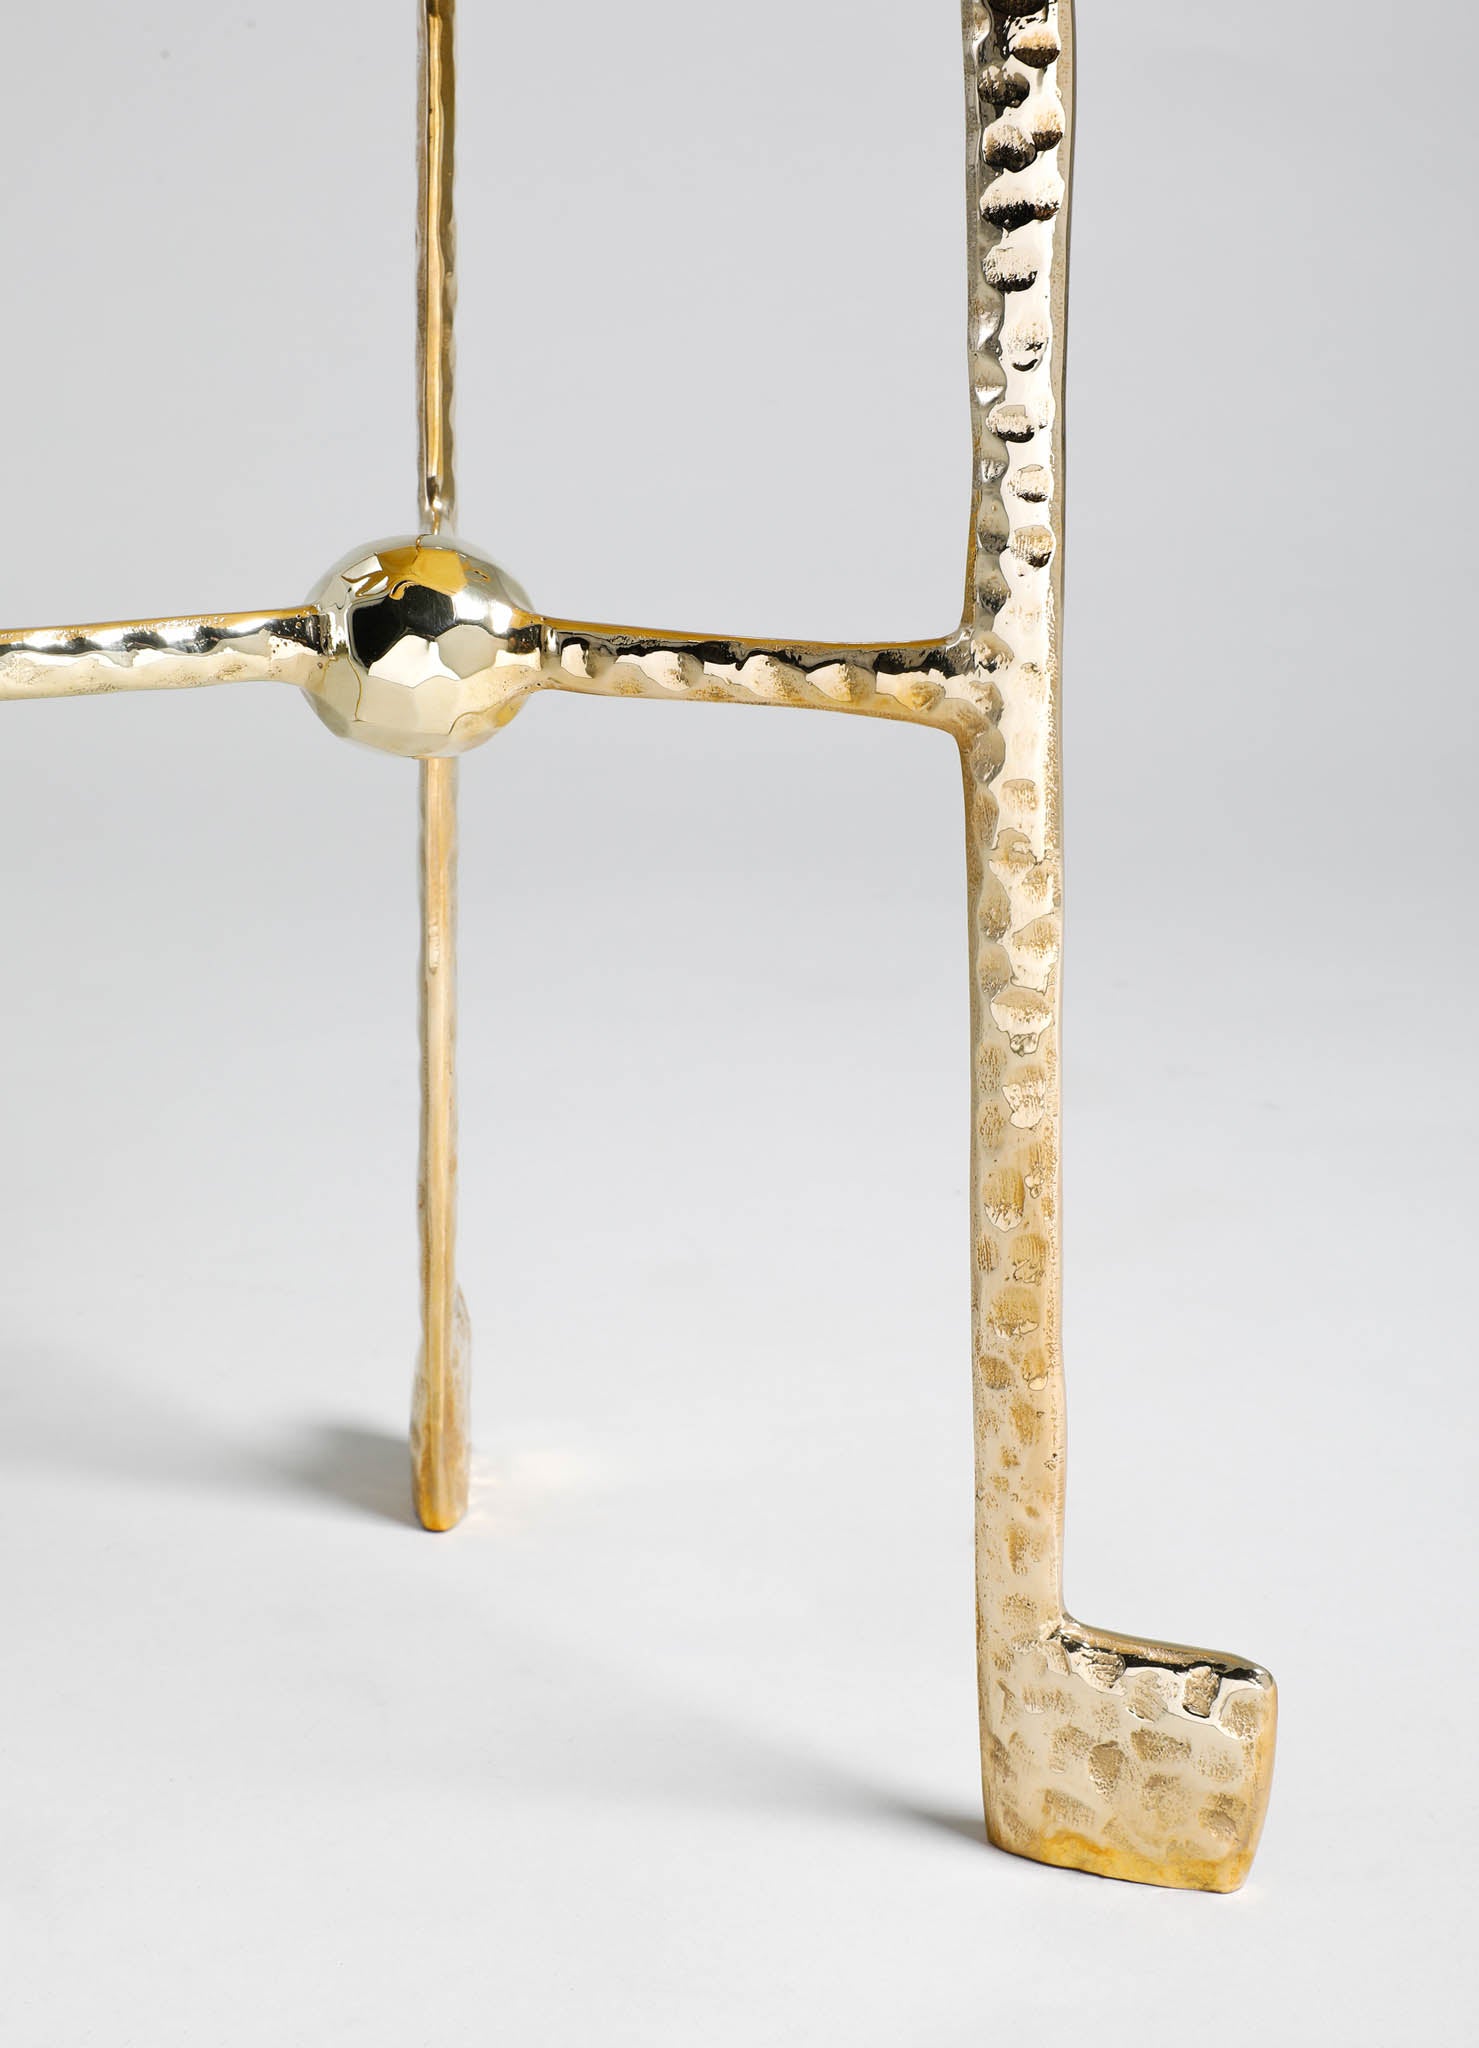 brass legs side table